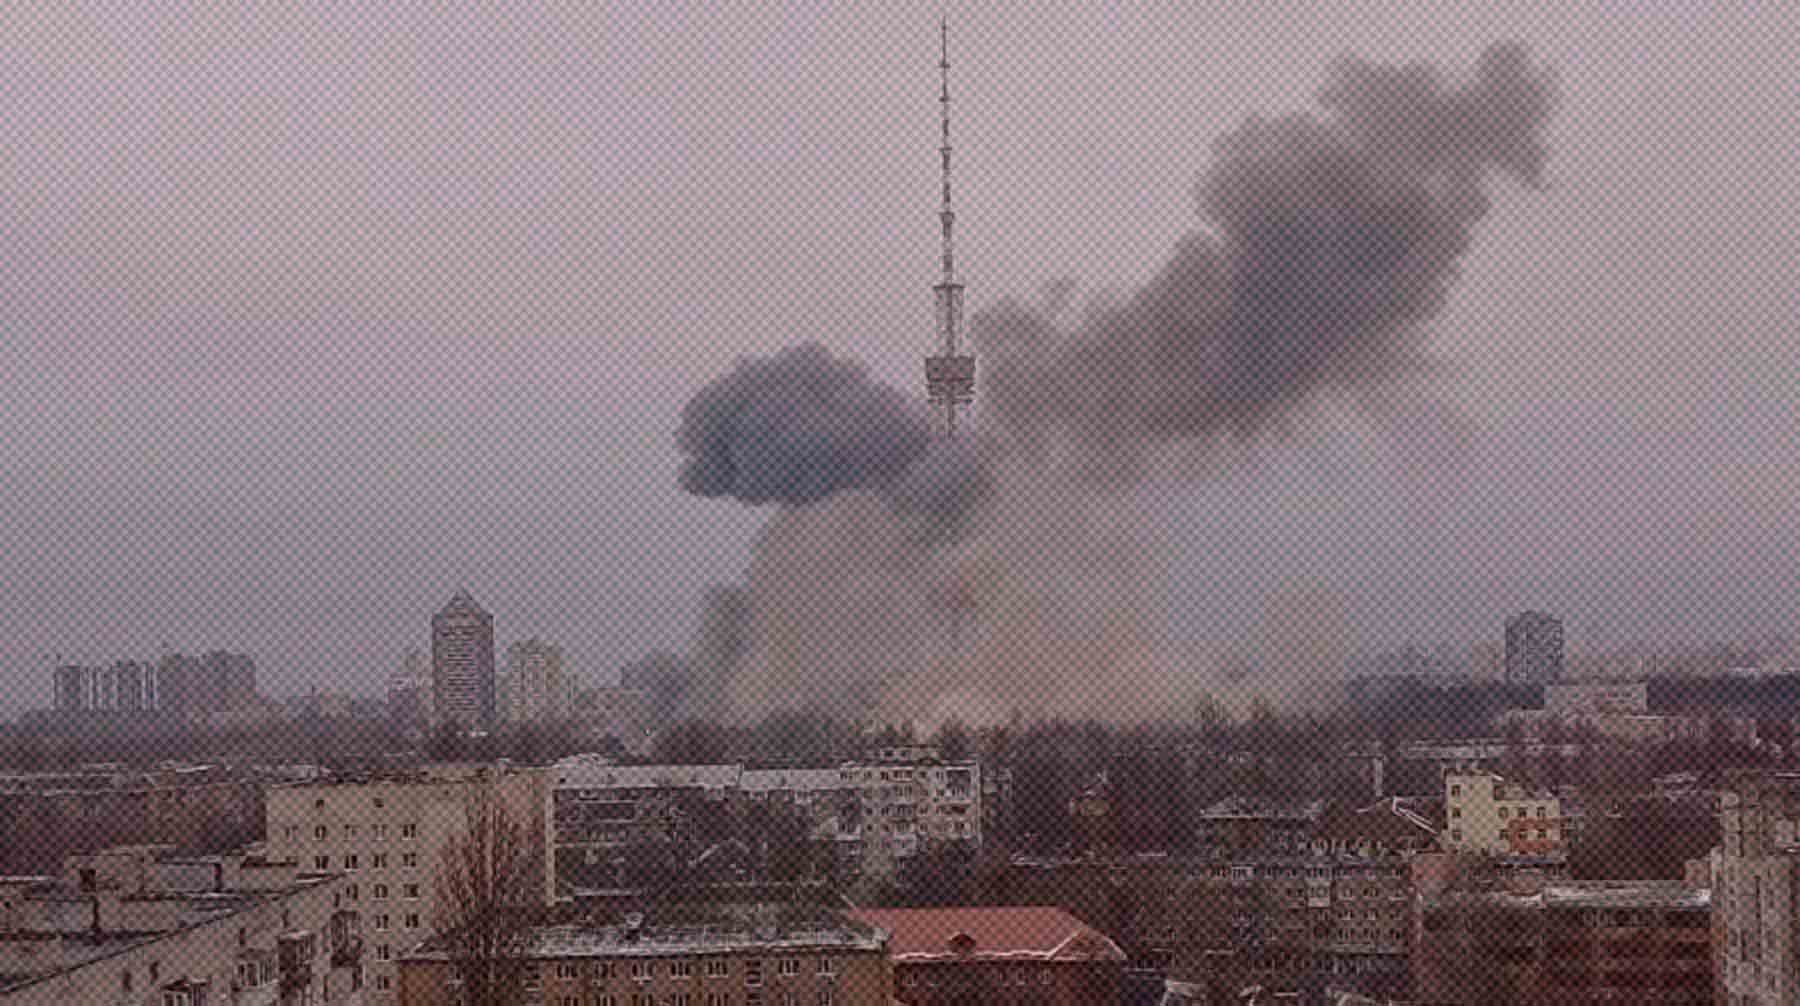 Удалось вывести из строя аппаратную телебашню в Киеве Киевская телебашня во время обстрела